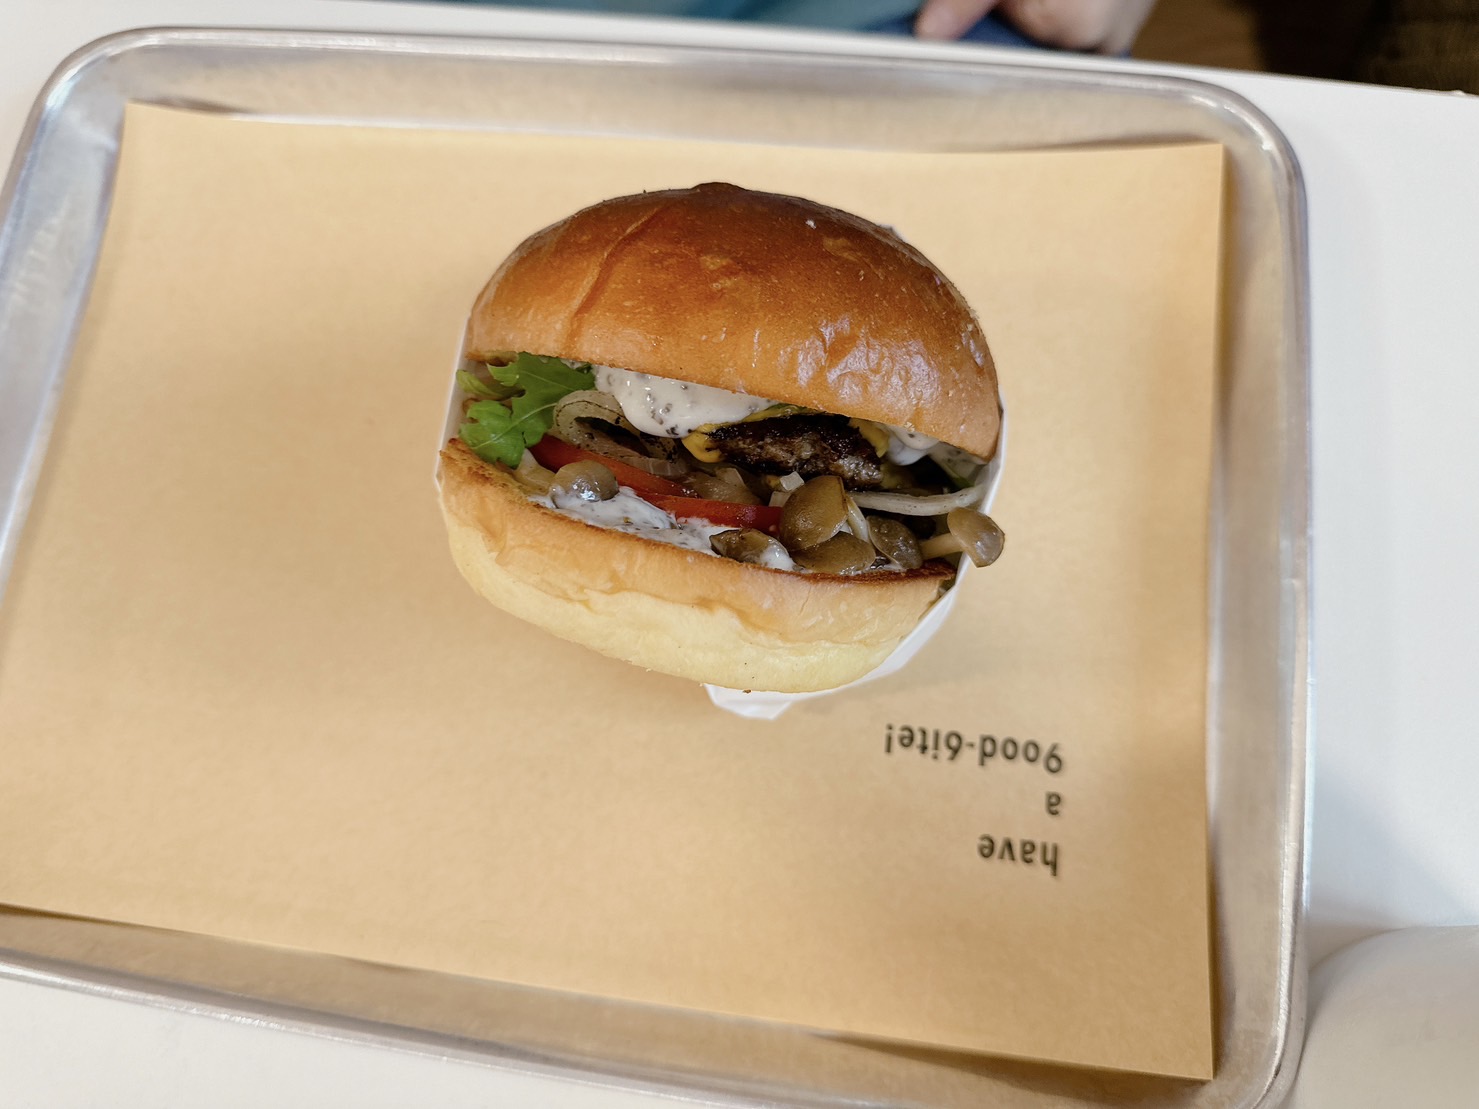 1996 burger